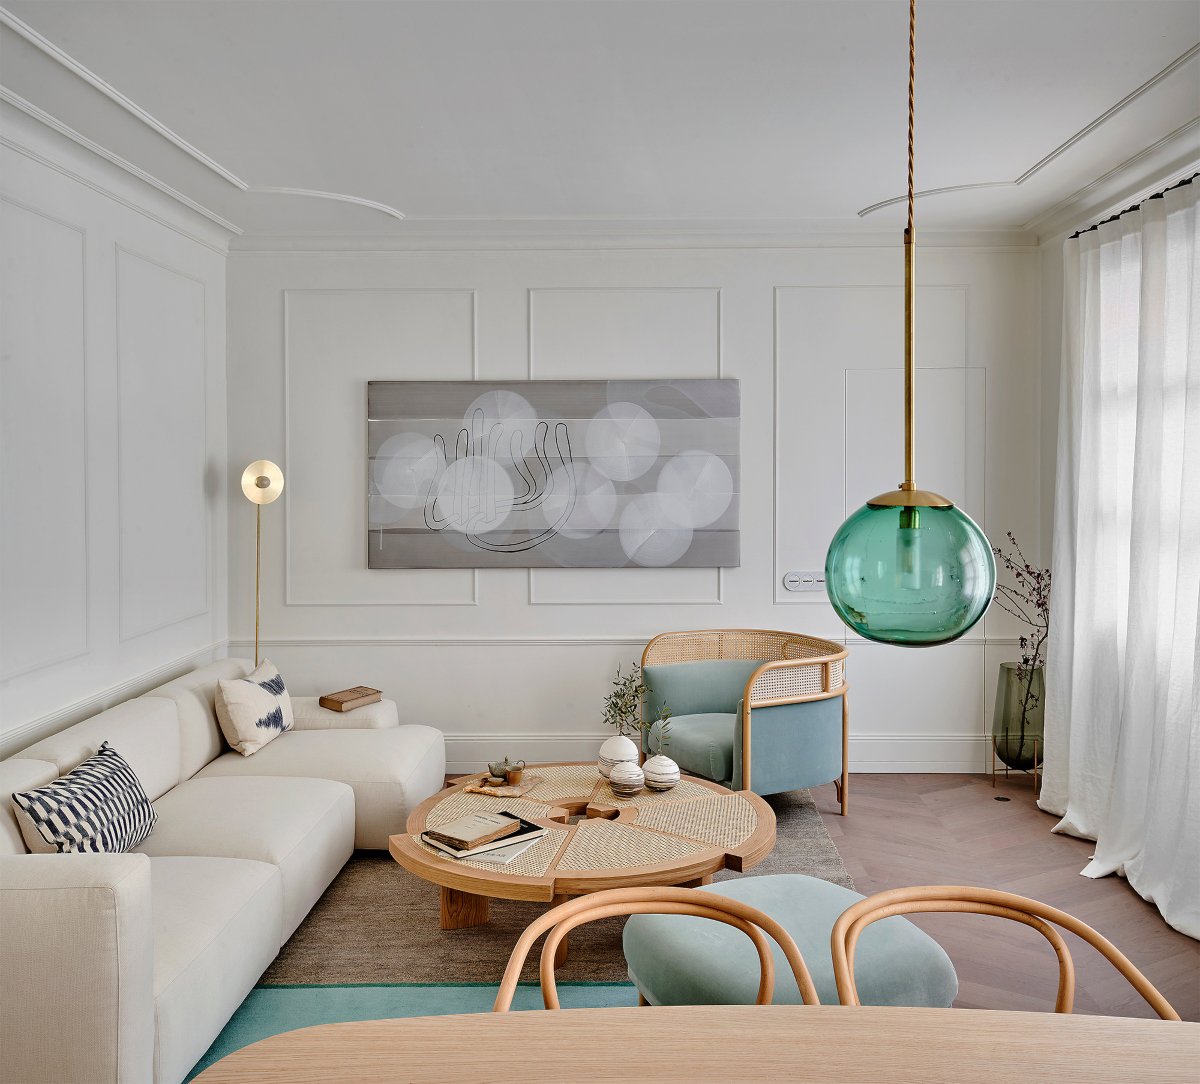 Salón pequeño en color neutro y azul pastel con mobiliario de madera